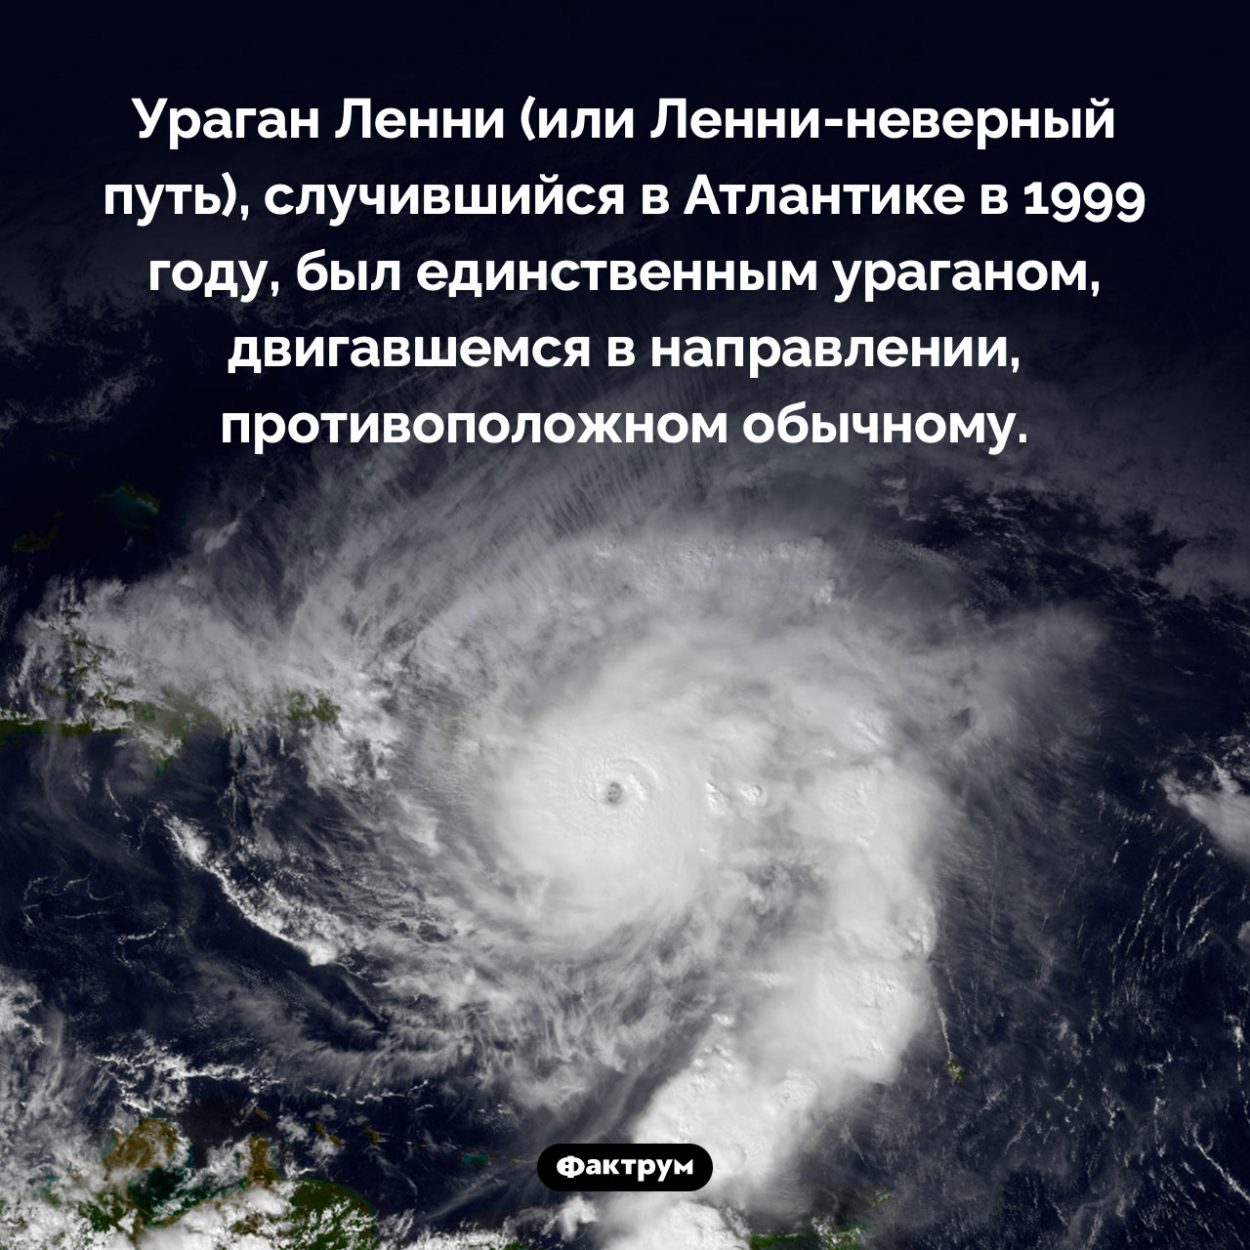 Ураган, двигавшийся не туда. Ураган Ленни (или Ленни-неверный путь), случившийся в Атлантике в 1999 году, был единственным ураганом, двигавшемся в направлении, противоположном обычному.